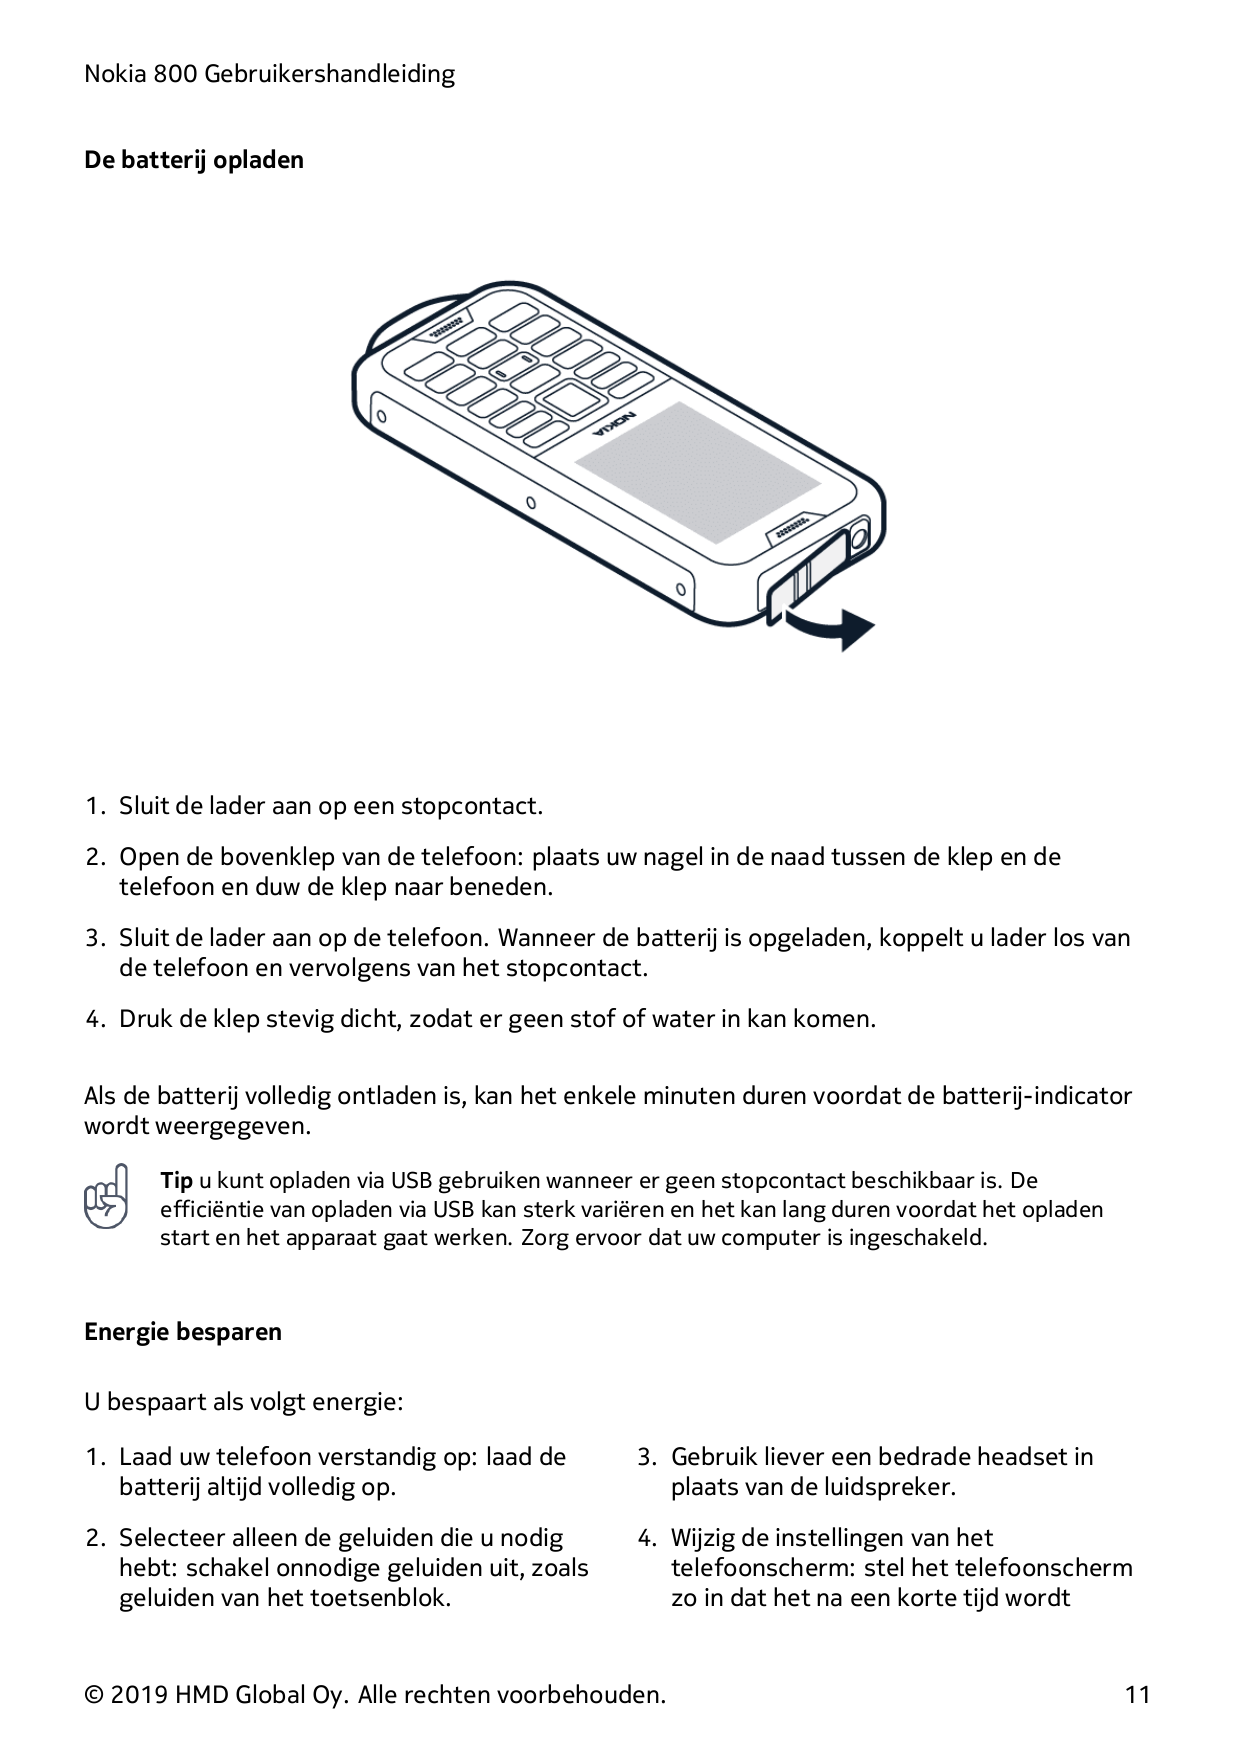 Nokia 800 GebruikershandleidingDe batterij opladen1. Sluit de lader aan op een stopcontact.2. Open de bovenklep van de telefoon: